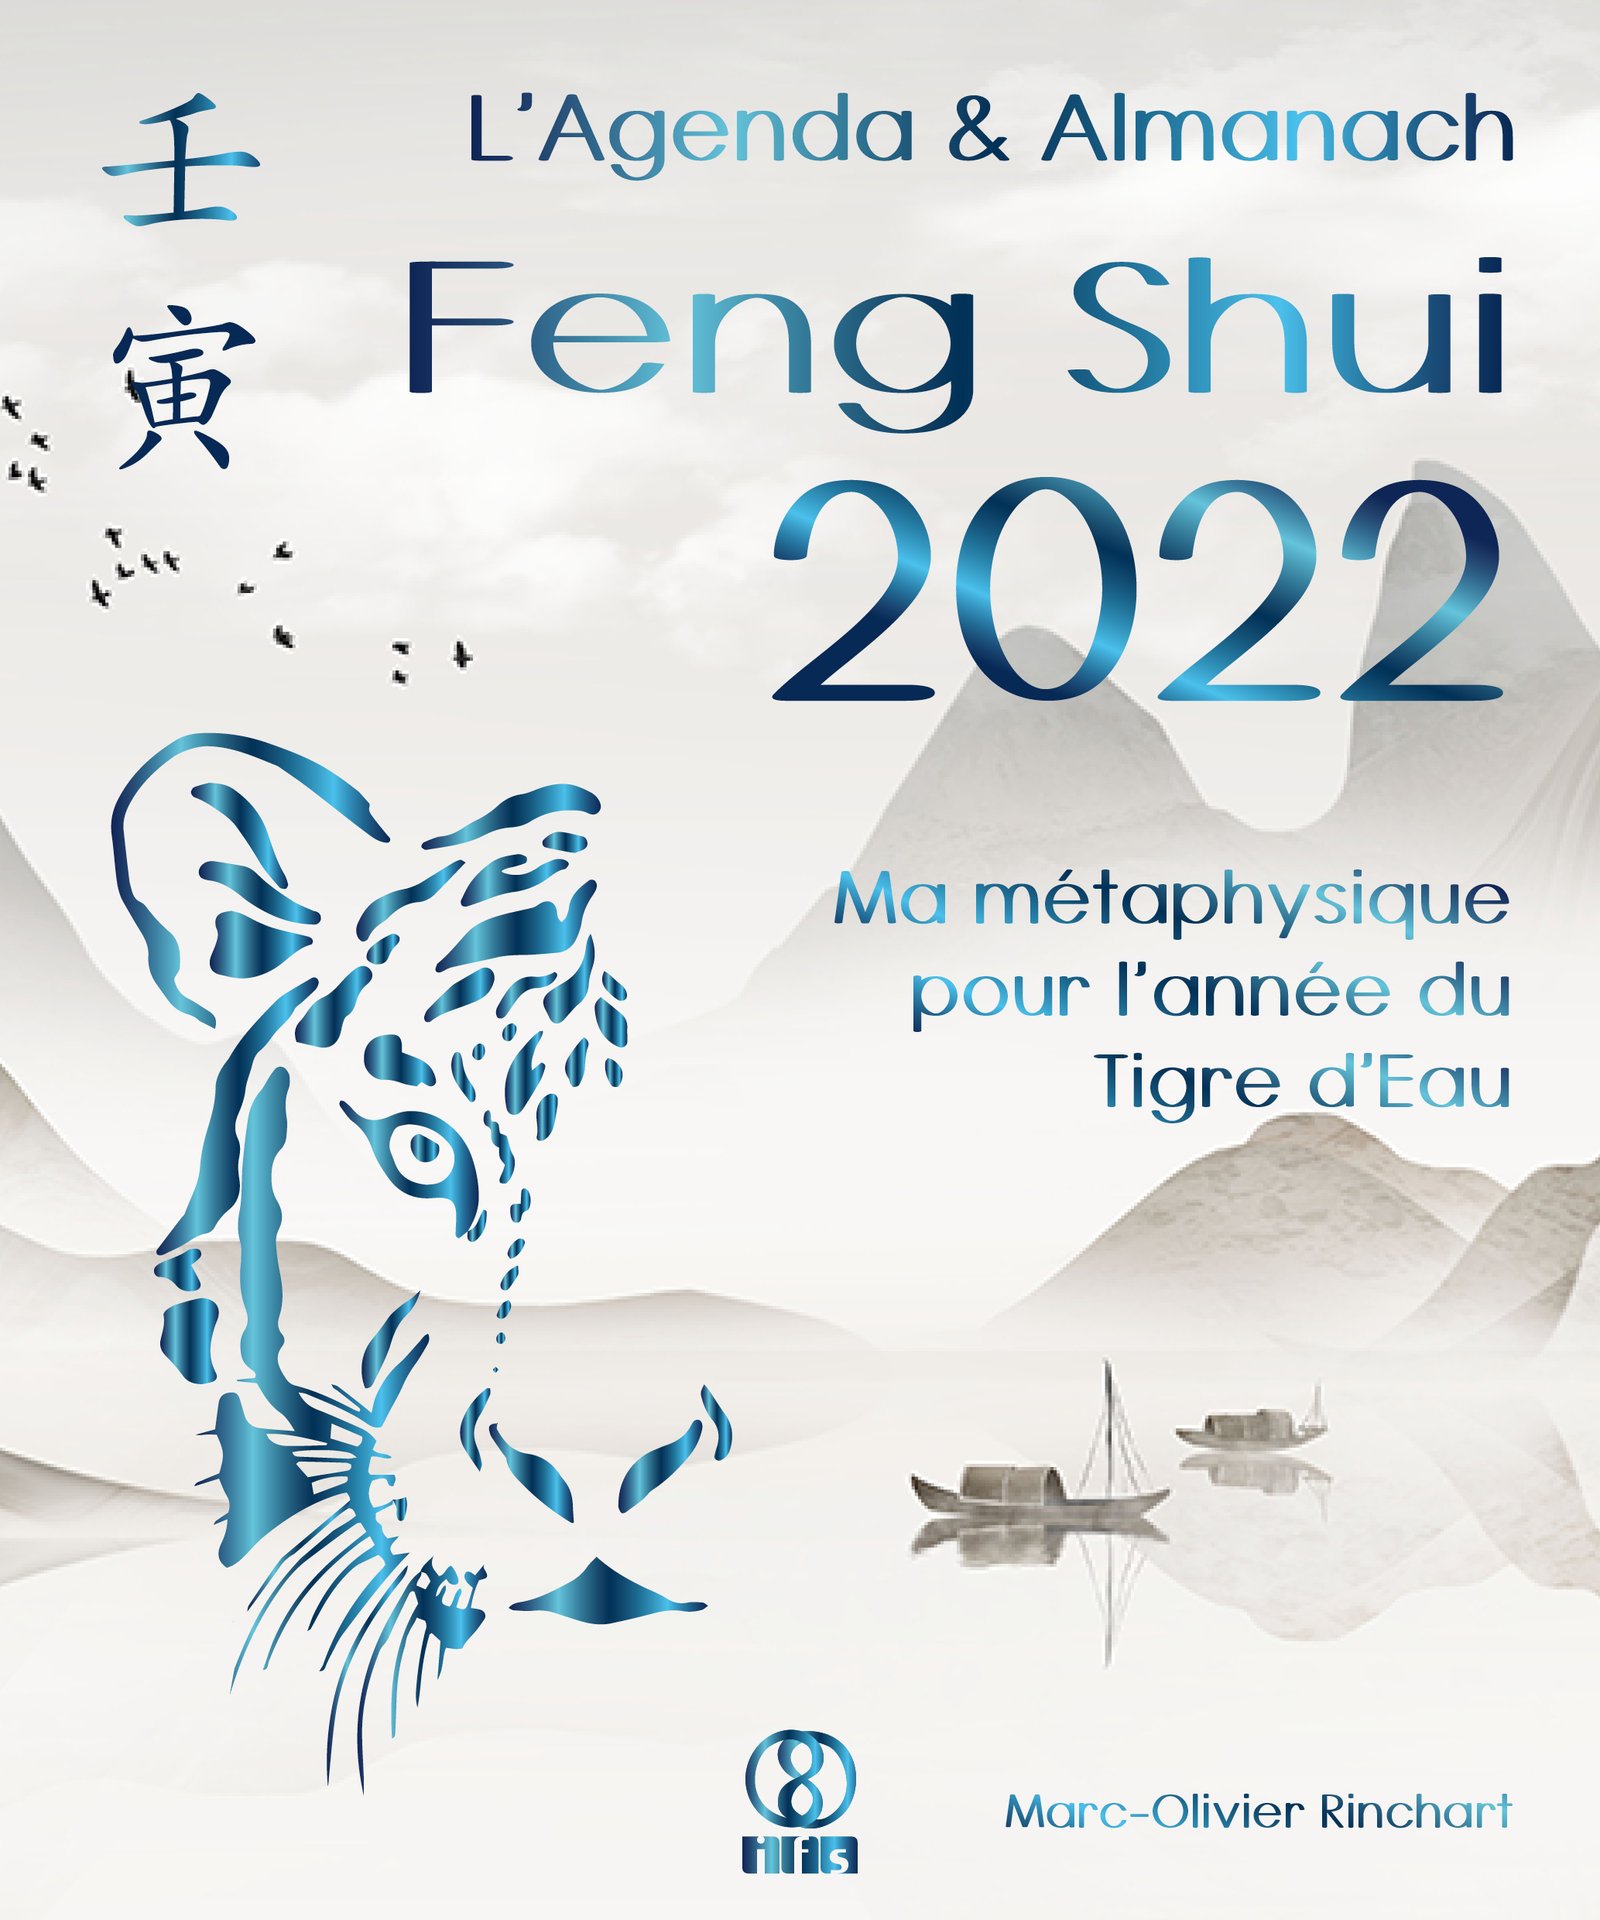 L’Agenda & Almanach Feng Shui 2022. L’année du Tigre d’Eau